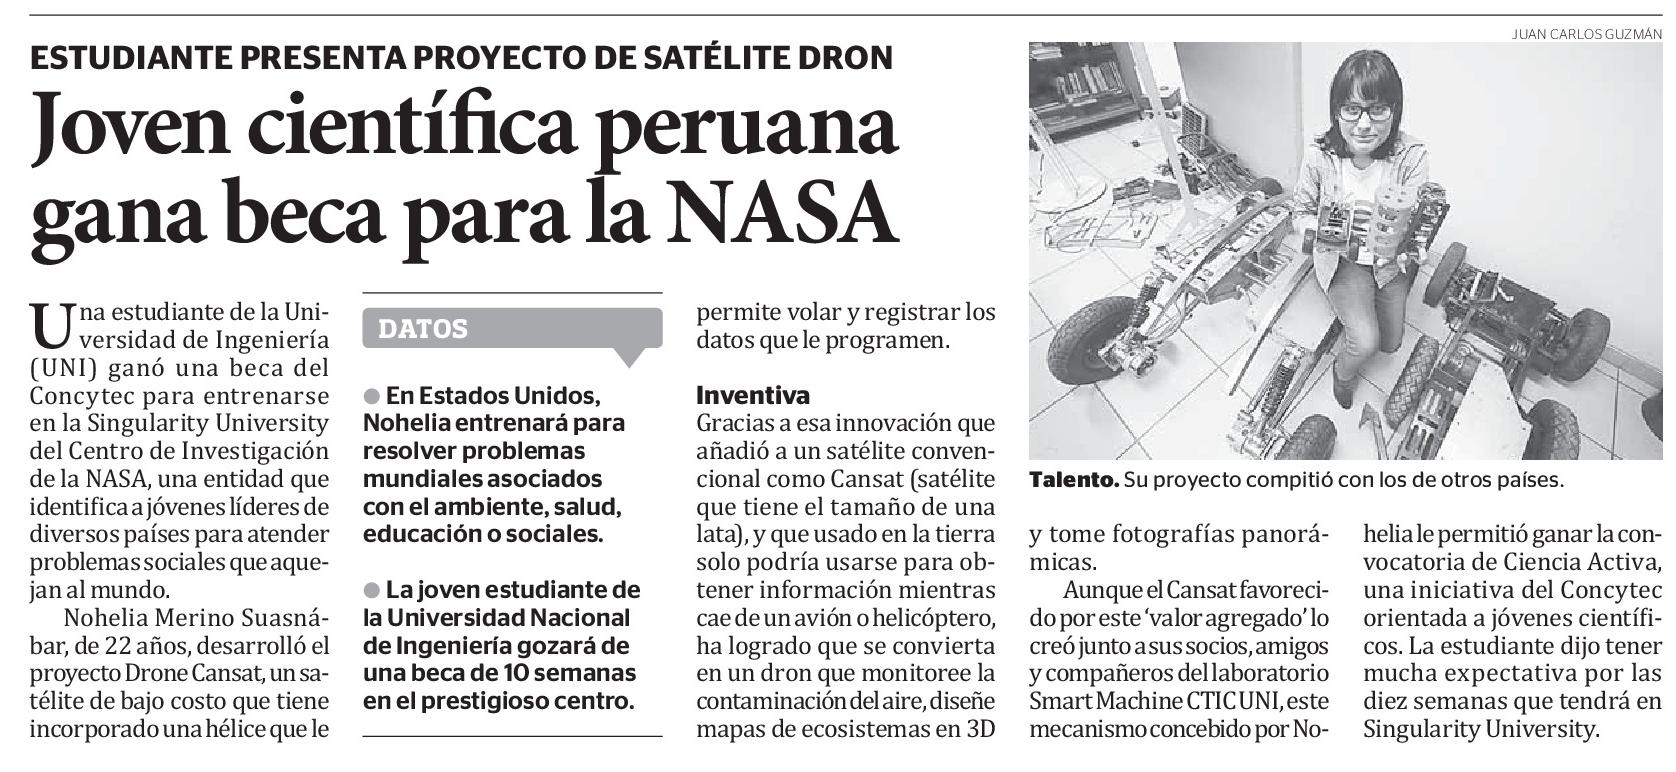 Joven científica peruana gana beca para la NASA (Diario El Peruano, 07